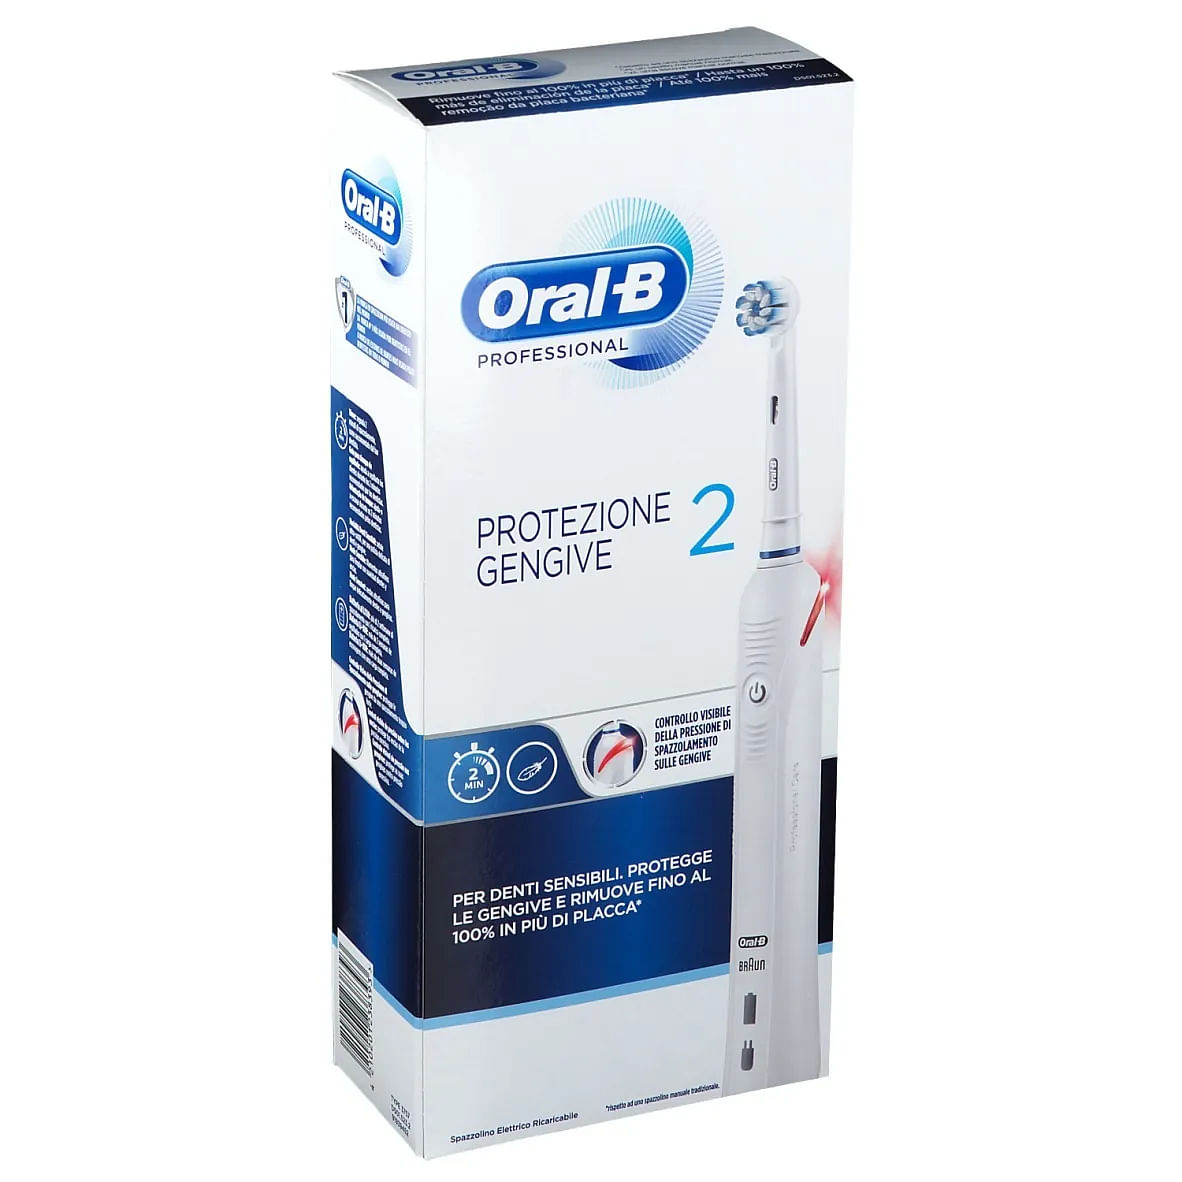 Oral-b Spazzolino Elettrico Power Pro 2 Protezione Gengive